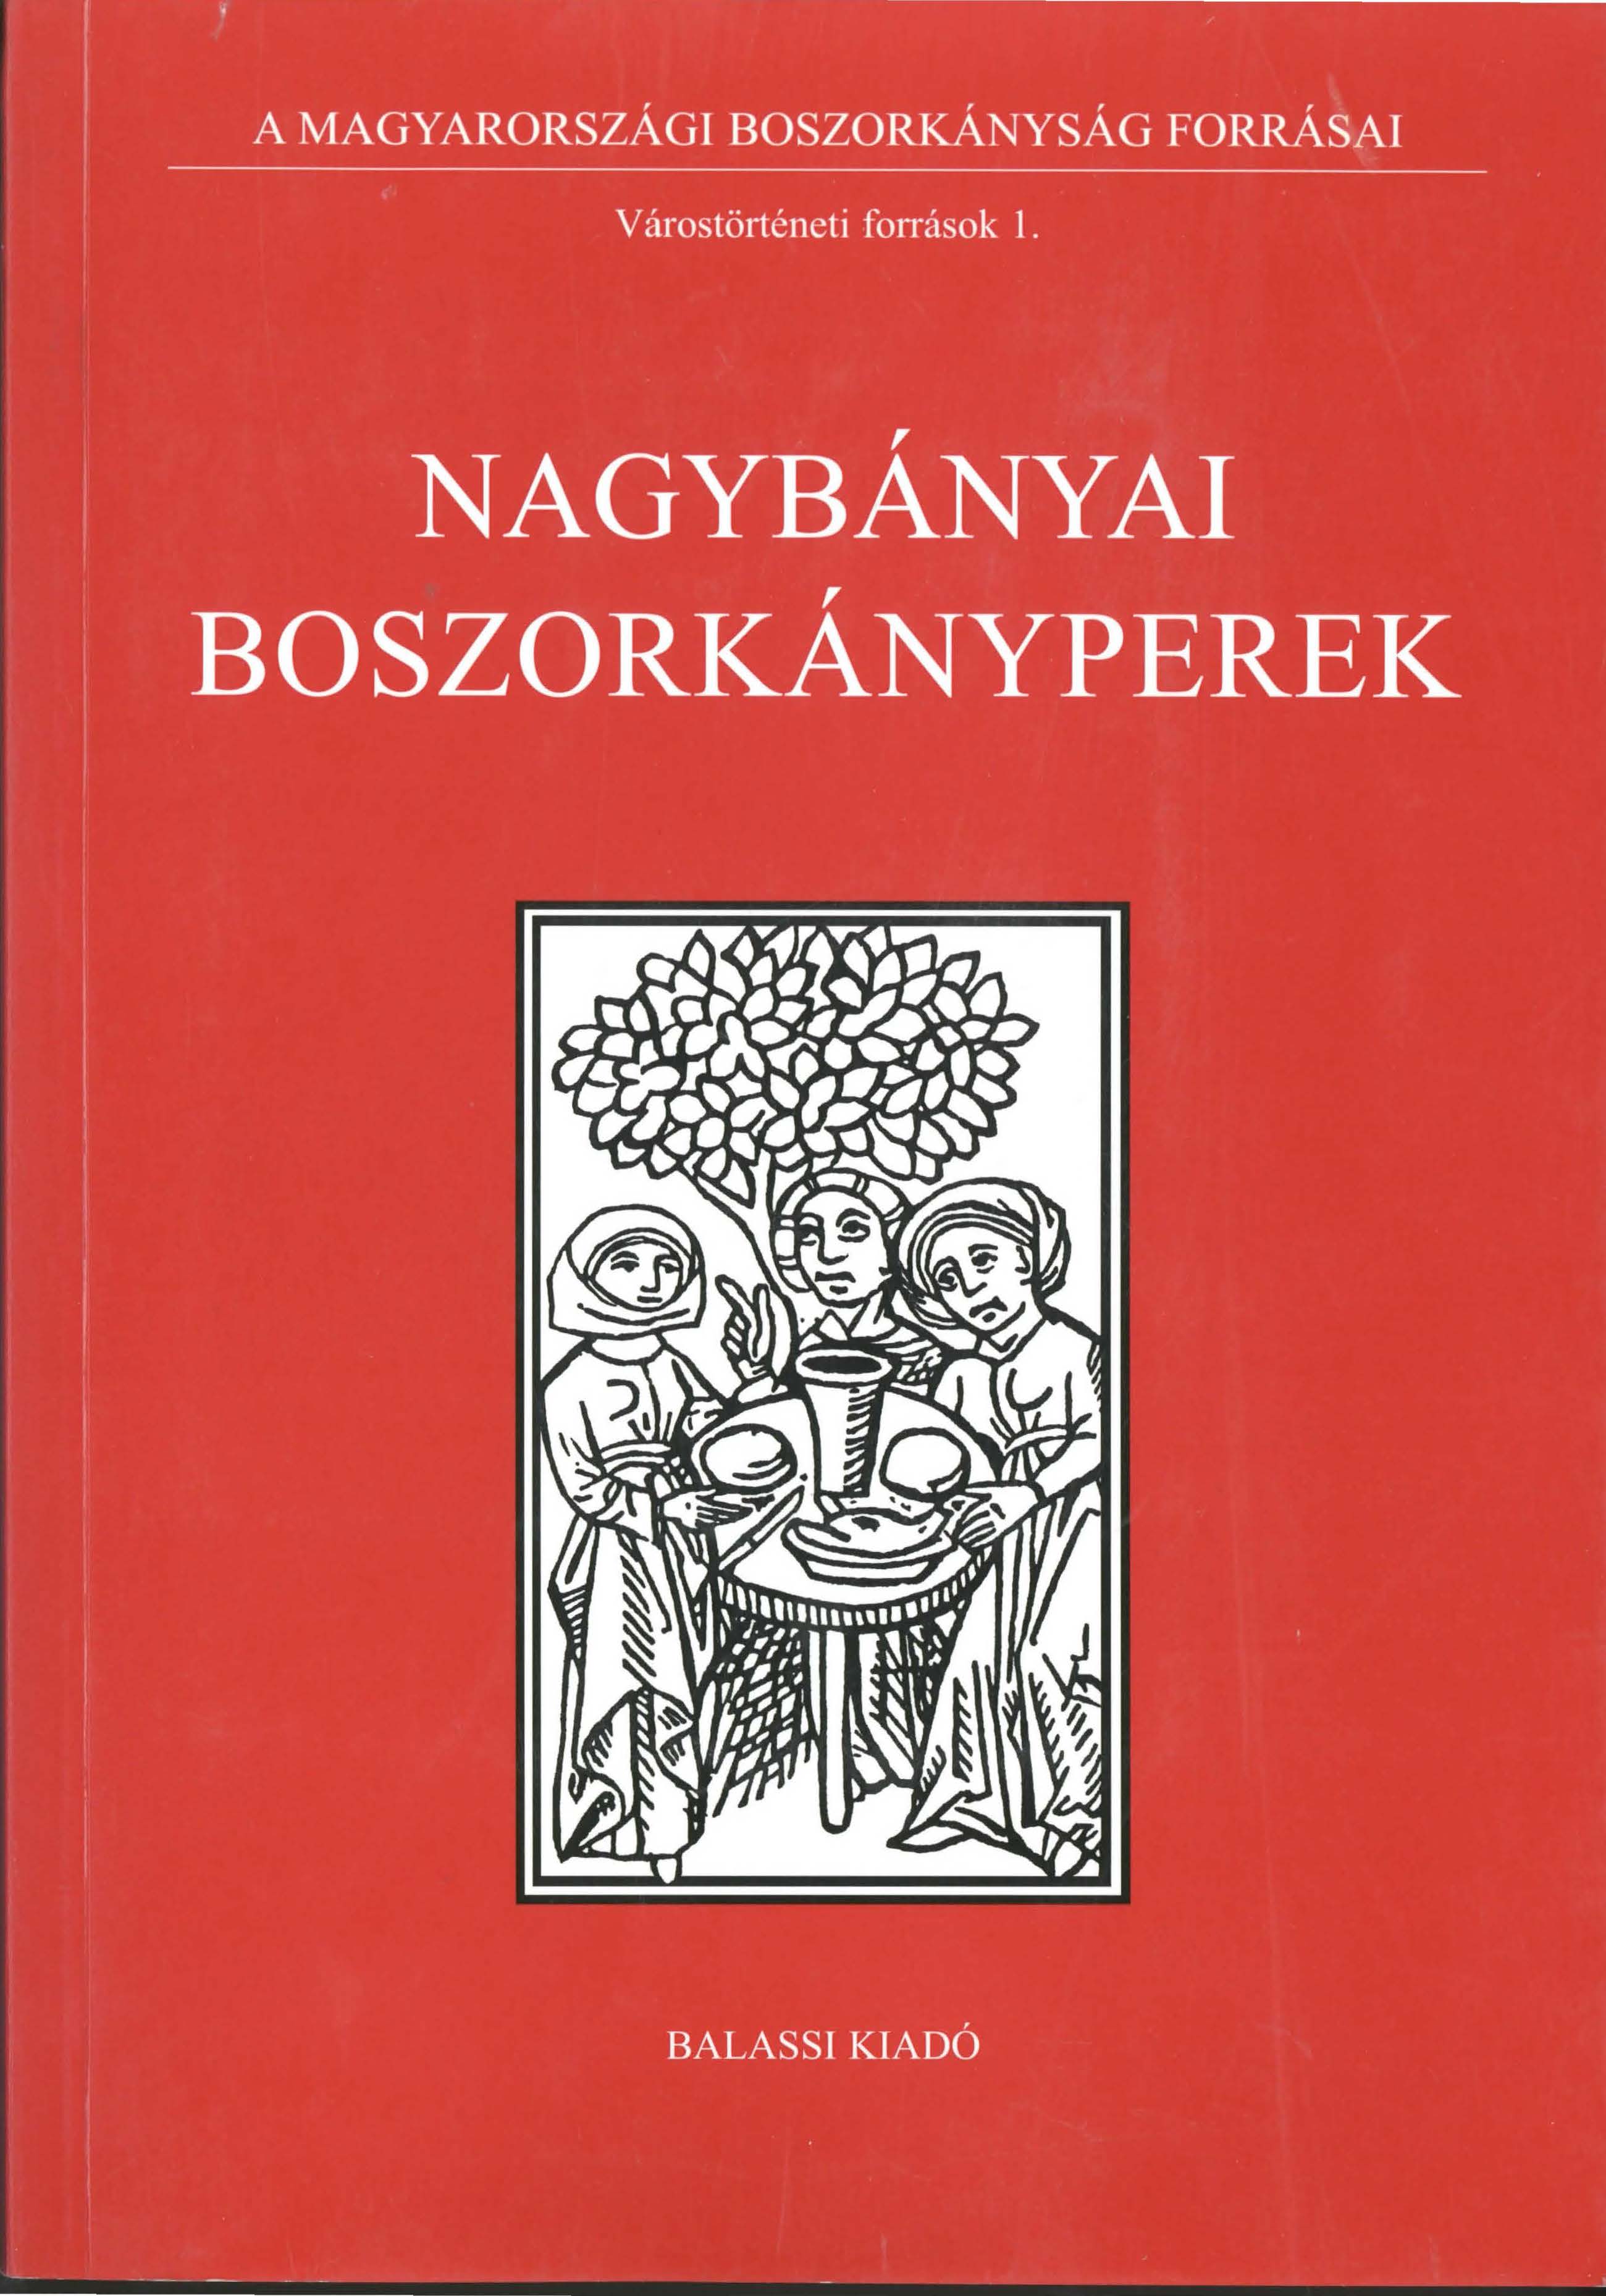 BALOGH B. szerk. 2003 Nagybányai boszorkányperek BOSZ I cover